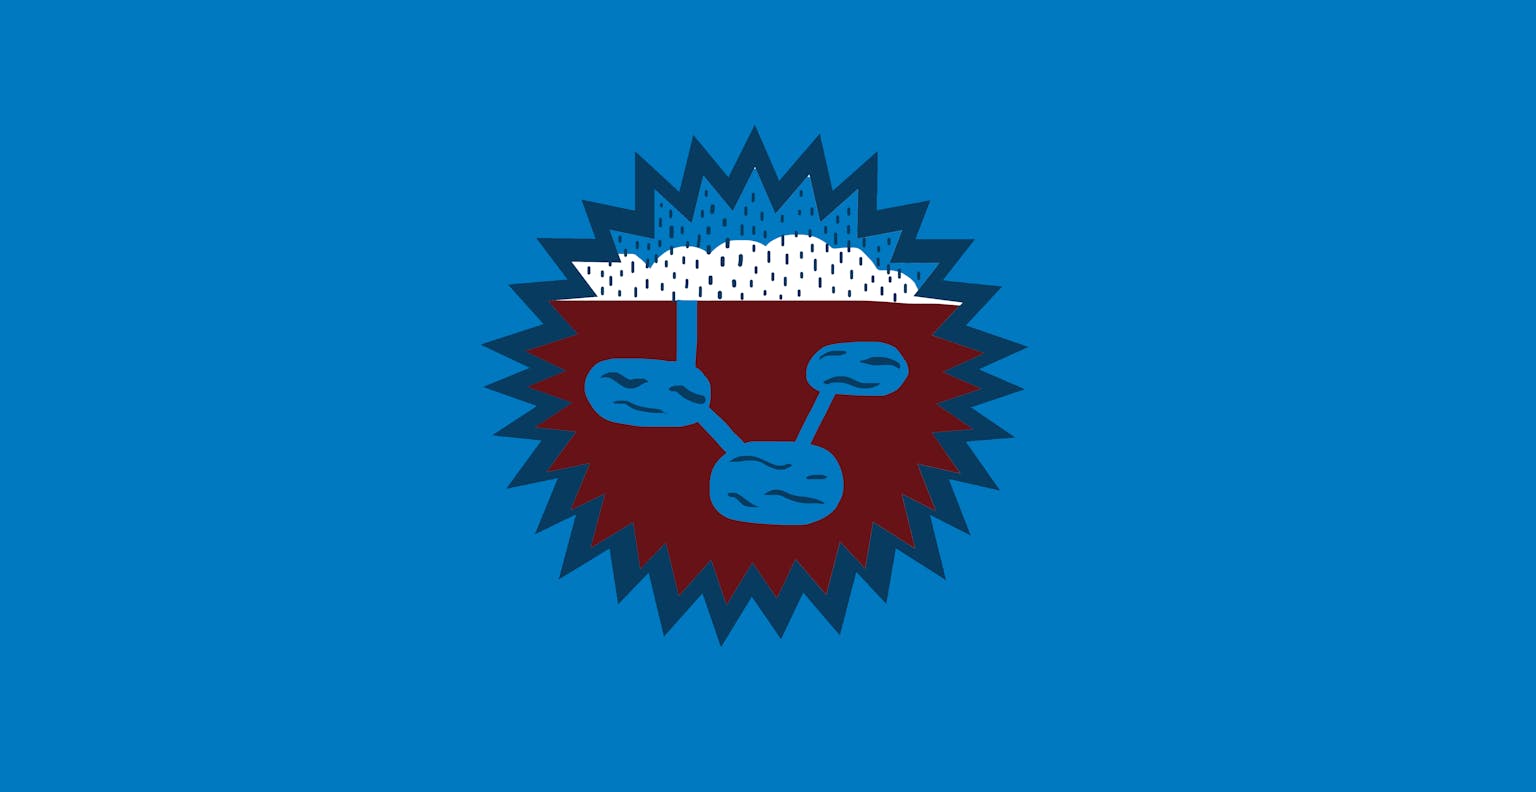 Een stervormig logo met daarin een illustratie van regenwater dat in de grond wordt opgenomen.